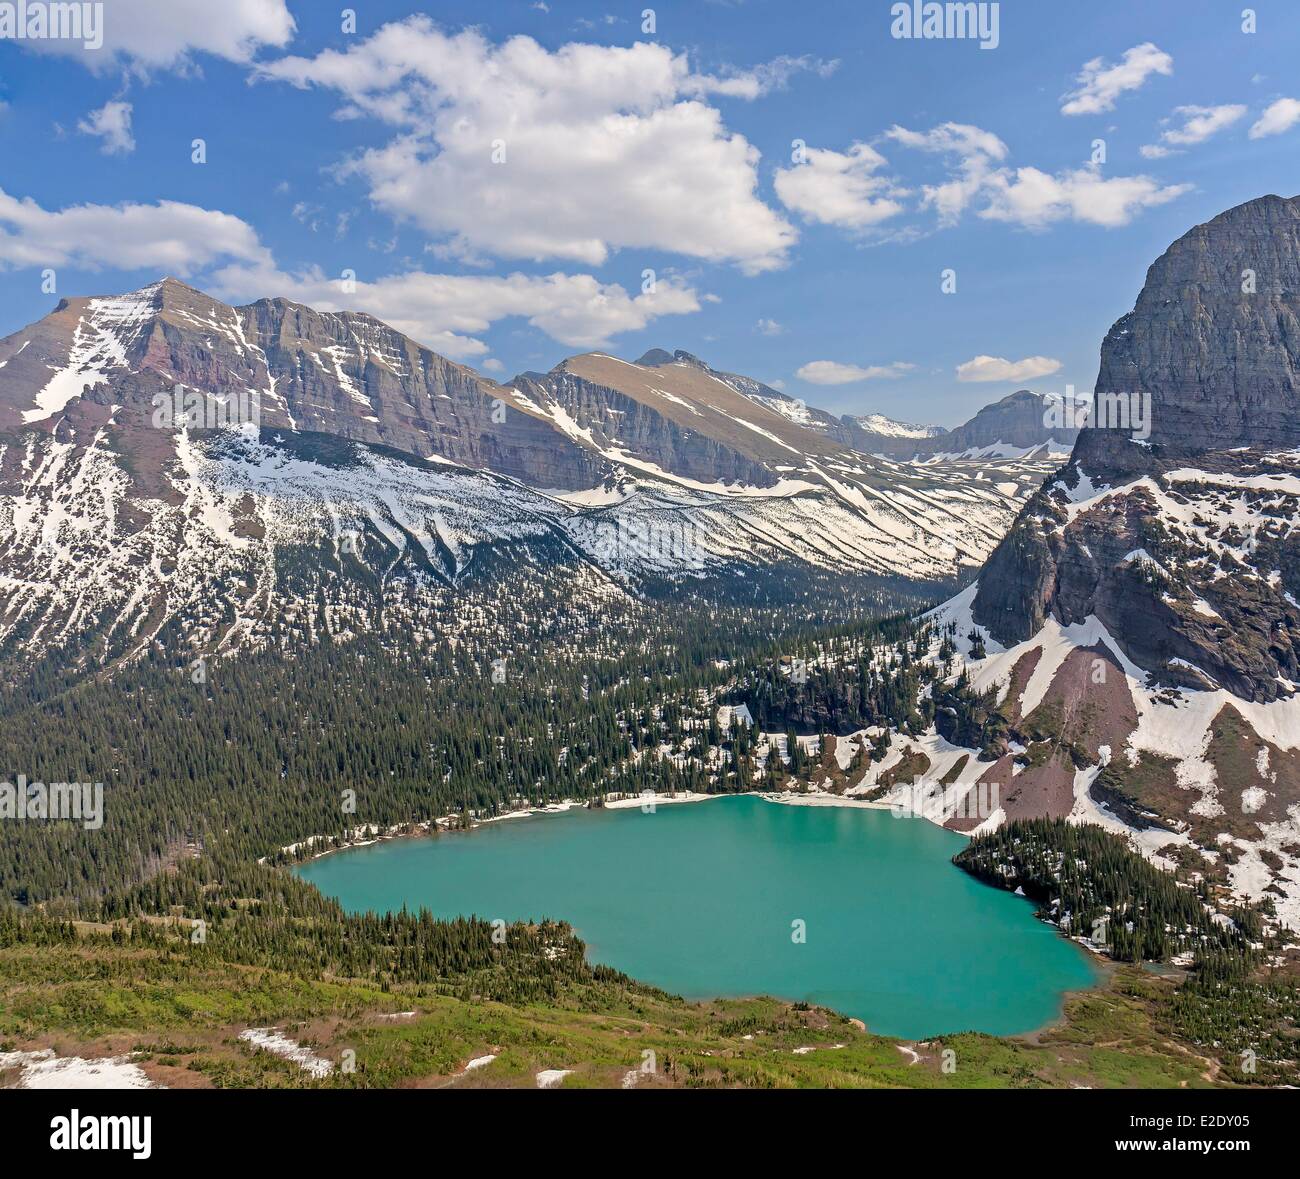 Vereinigten Staaten Montana Rocky Mountains Glacier National Park als Weltkulturerbe durch die UNESCO viele Gletschergebiet Grinnell Lake aufgeführt Stockfoto